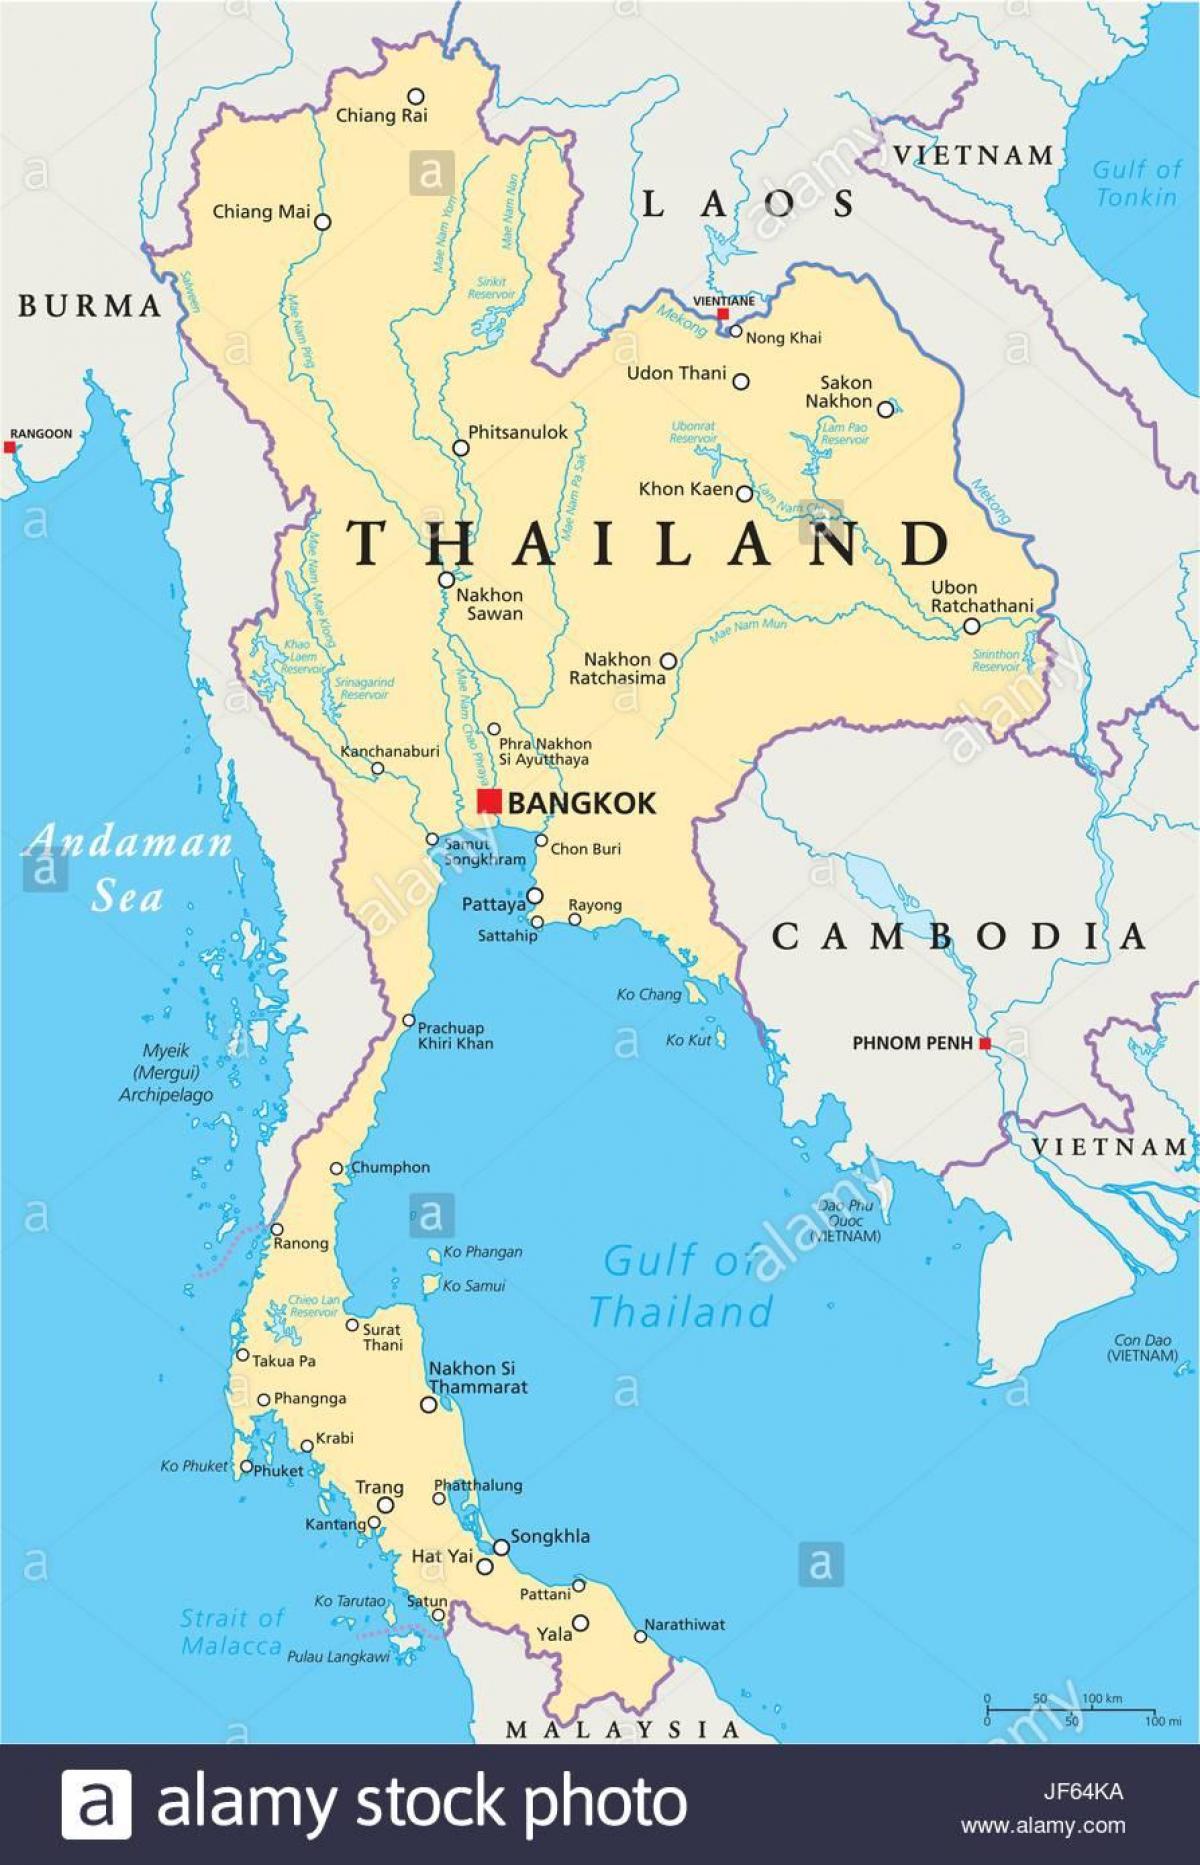 ব্যাংকক, থাইল্যান্ড বিশ্বের মানচিত্র